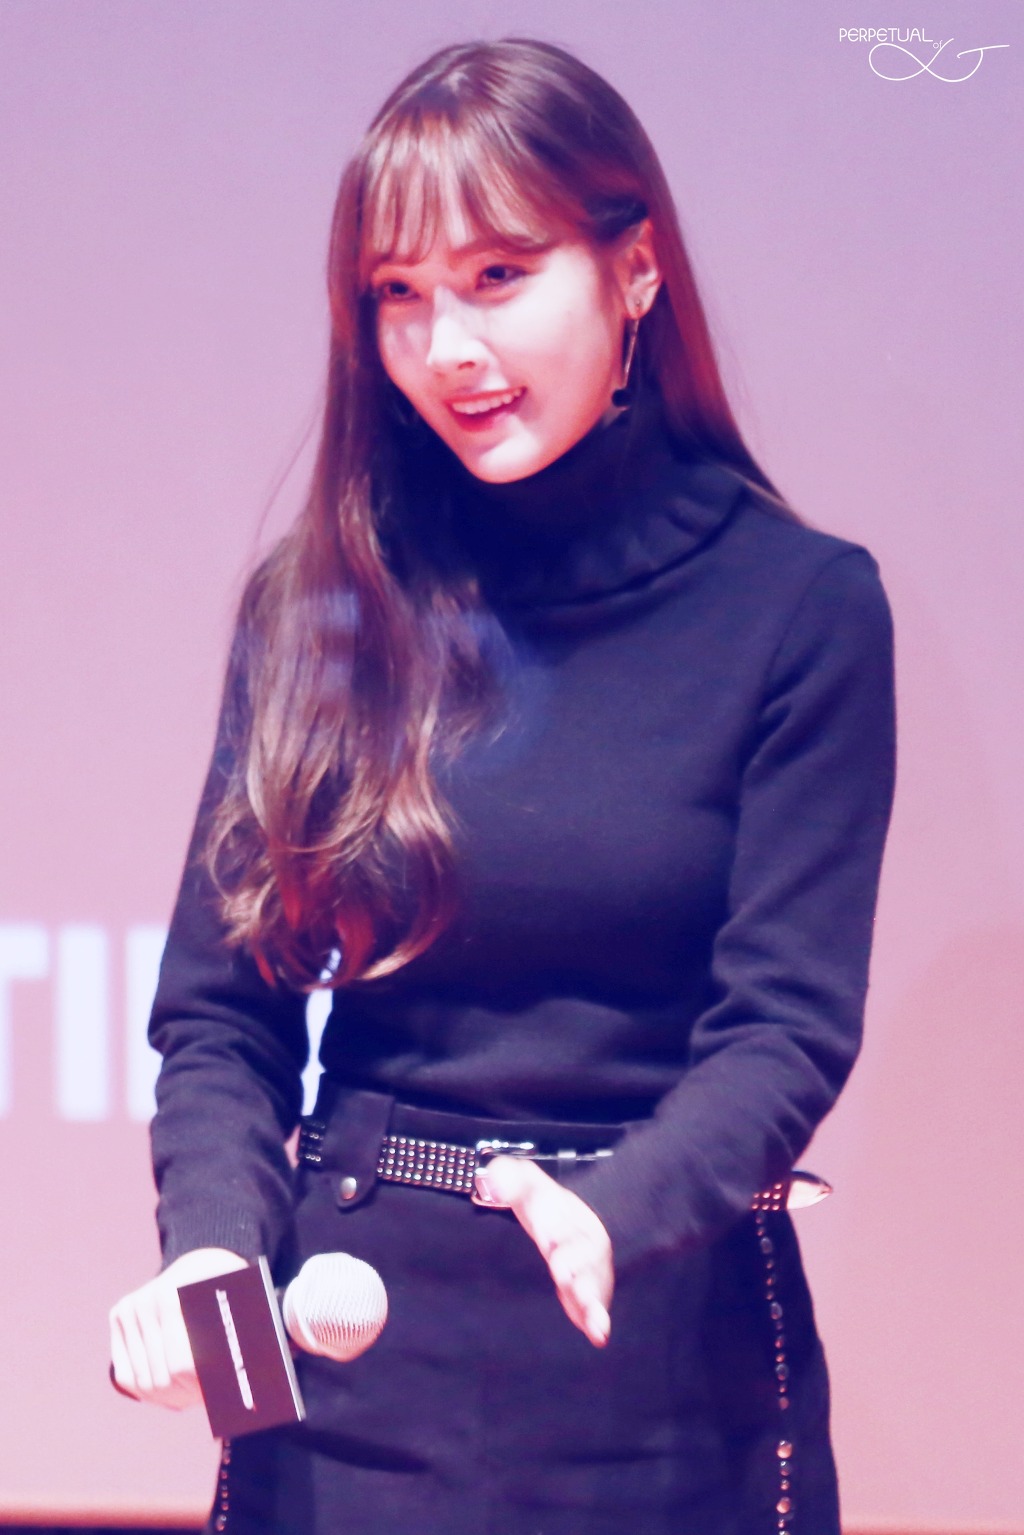 [PIC][07-11-2015]Jessica tham dự buổi Fansign cho dòng mỹ phẩm "J.ESTINA RED" tại "Myeongdong Lotte Cinema" vào chiều nay 2478F545563E43E7193256